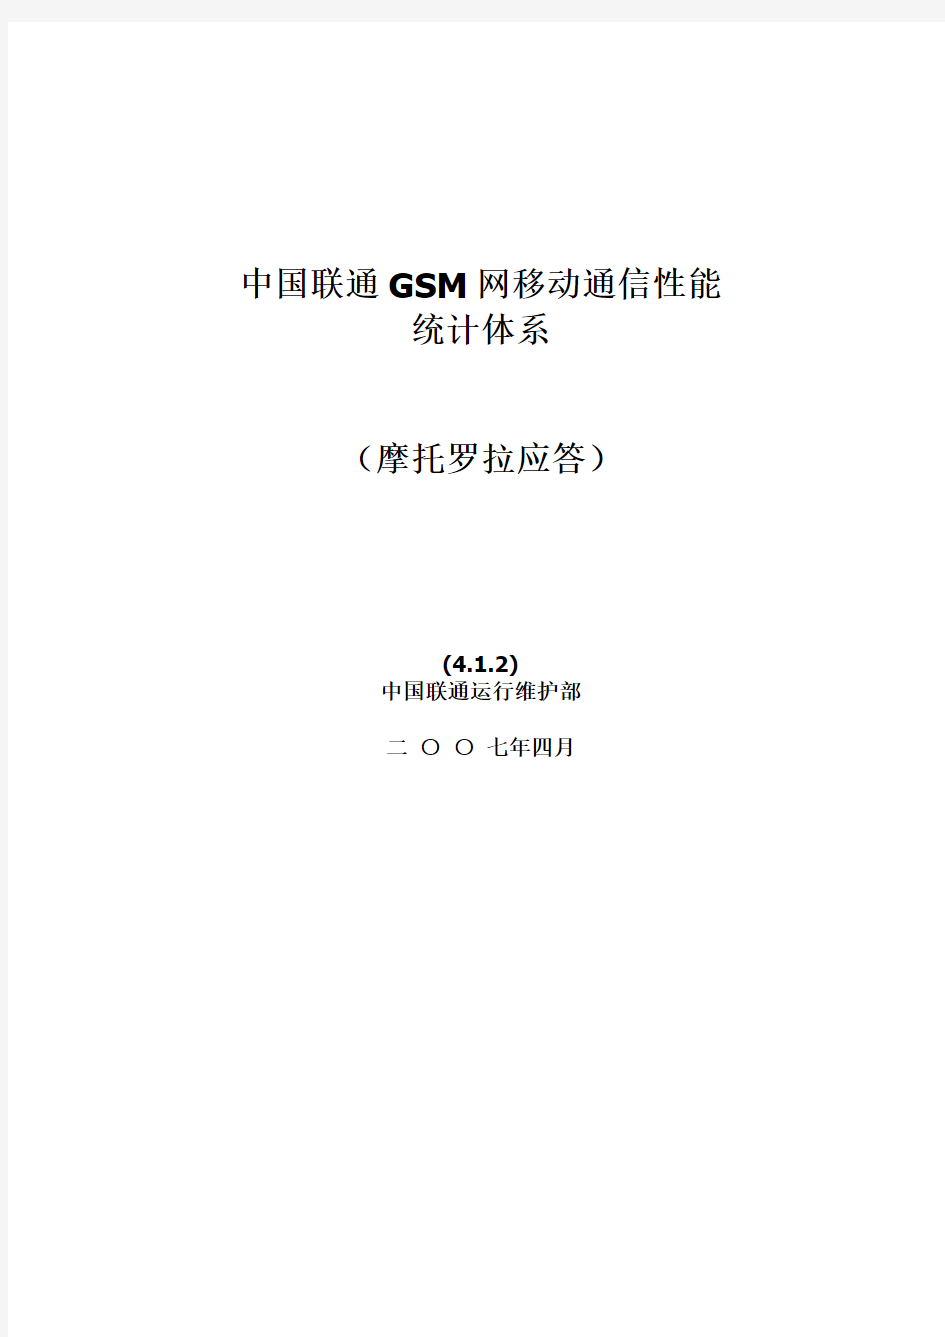 中国联通GSM网移动通信性能统计体系(摩托罗拉应答)